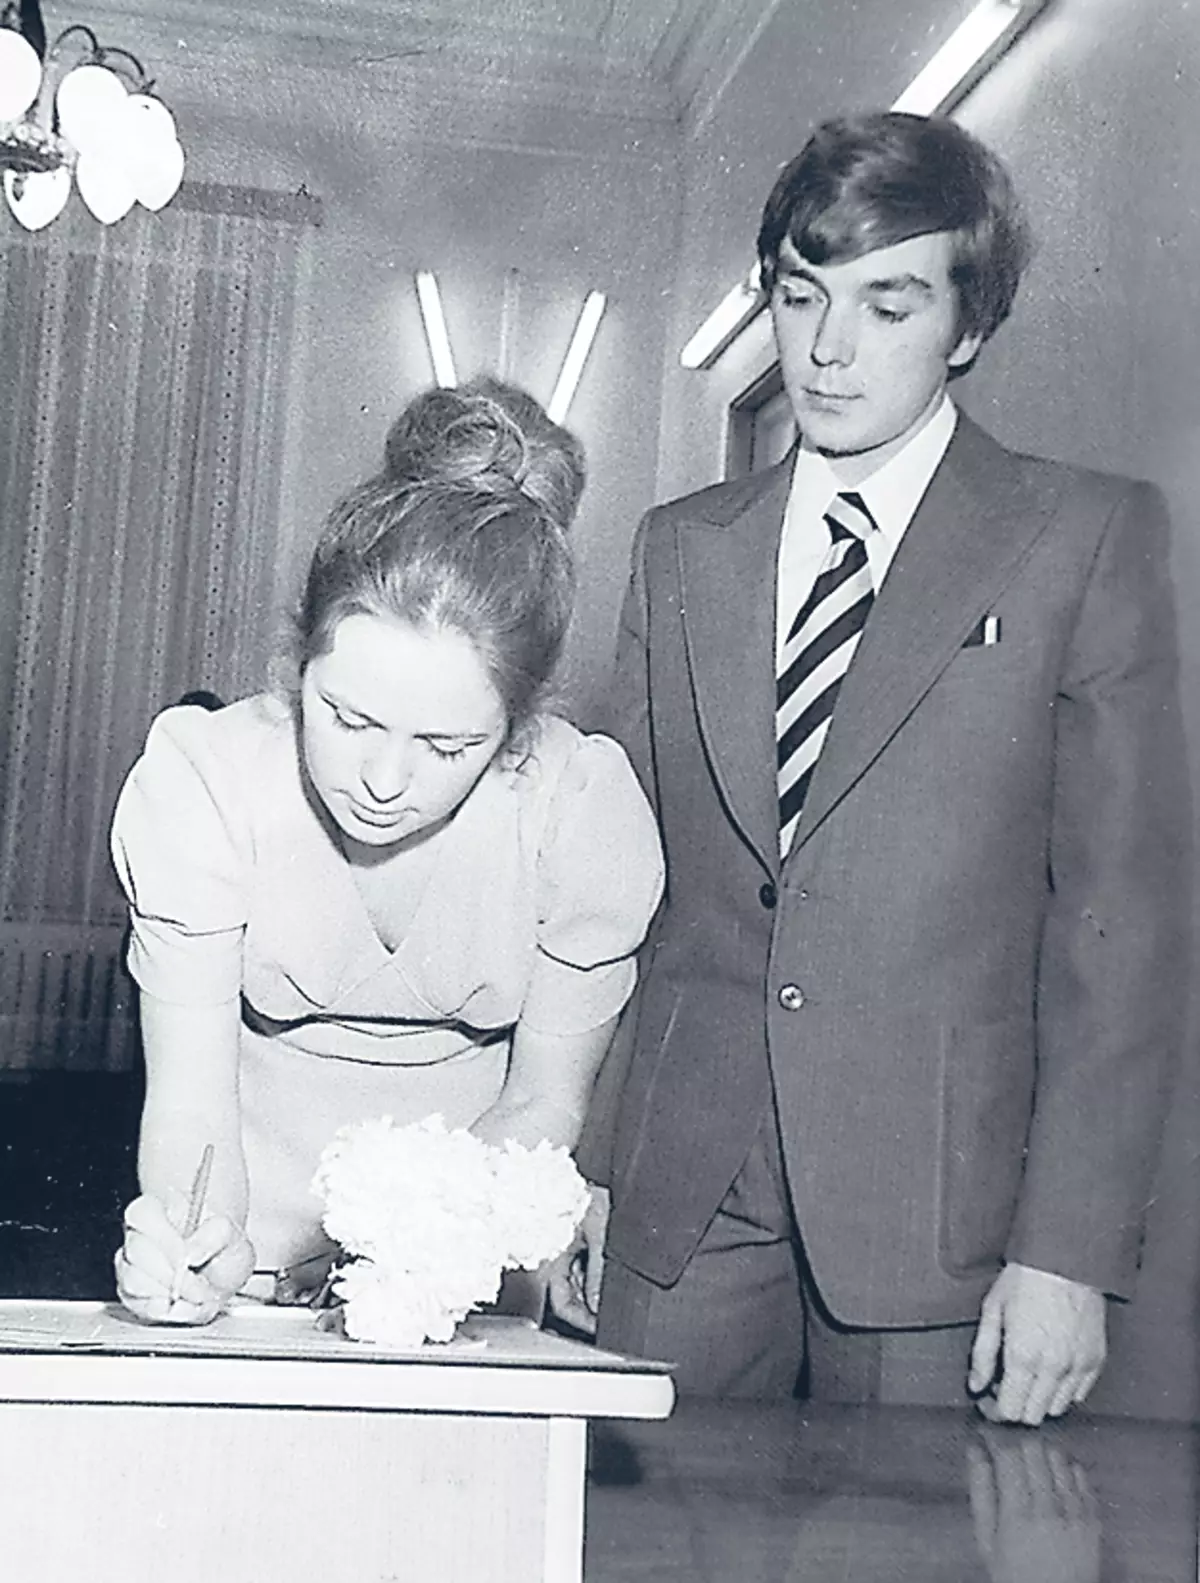 יורי ואלונורה נפגשו כשהיו עדיין בני נוער. הם הפכו לבעלה ואשתו ב -1975